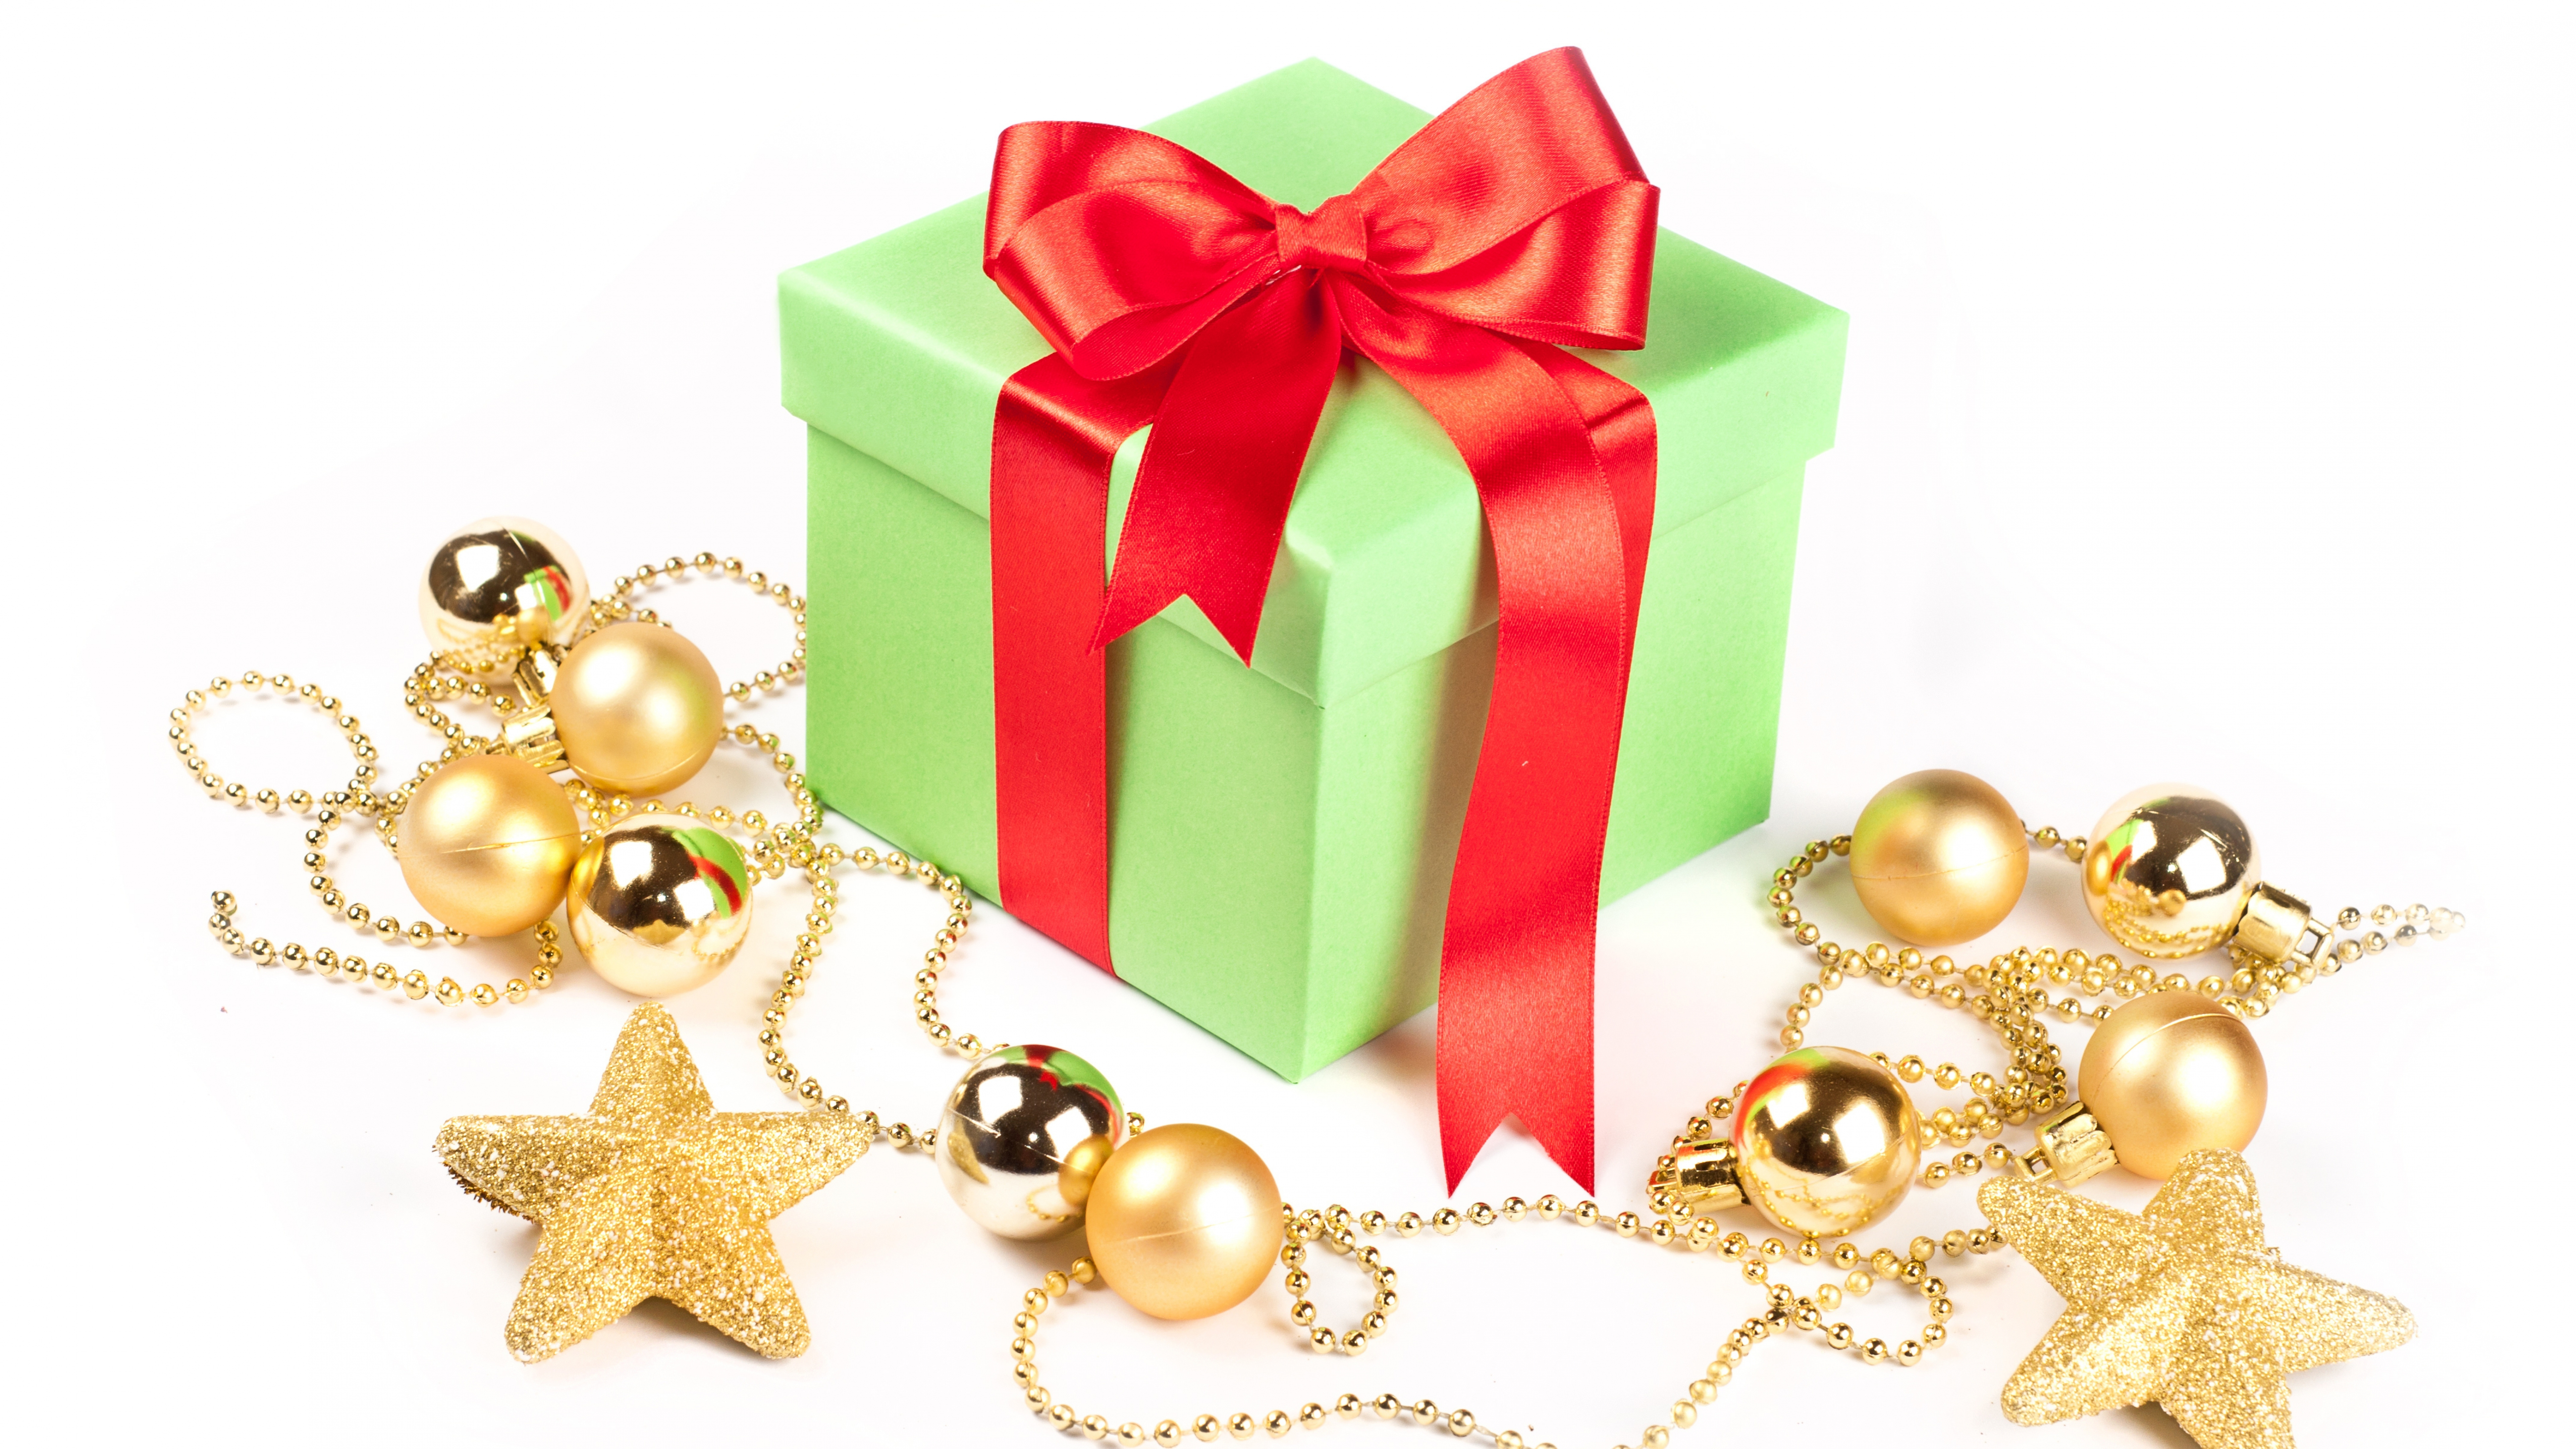 圣诞节的装饰品, 礼物, 圣诞节那天, 新的一年, 礼品包装 壁纸 7680x4320 允许